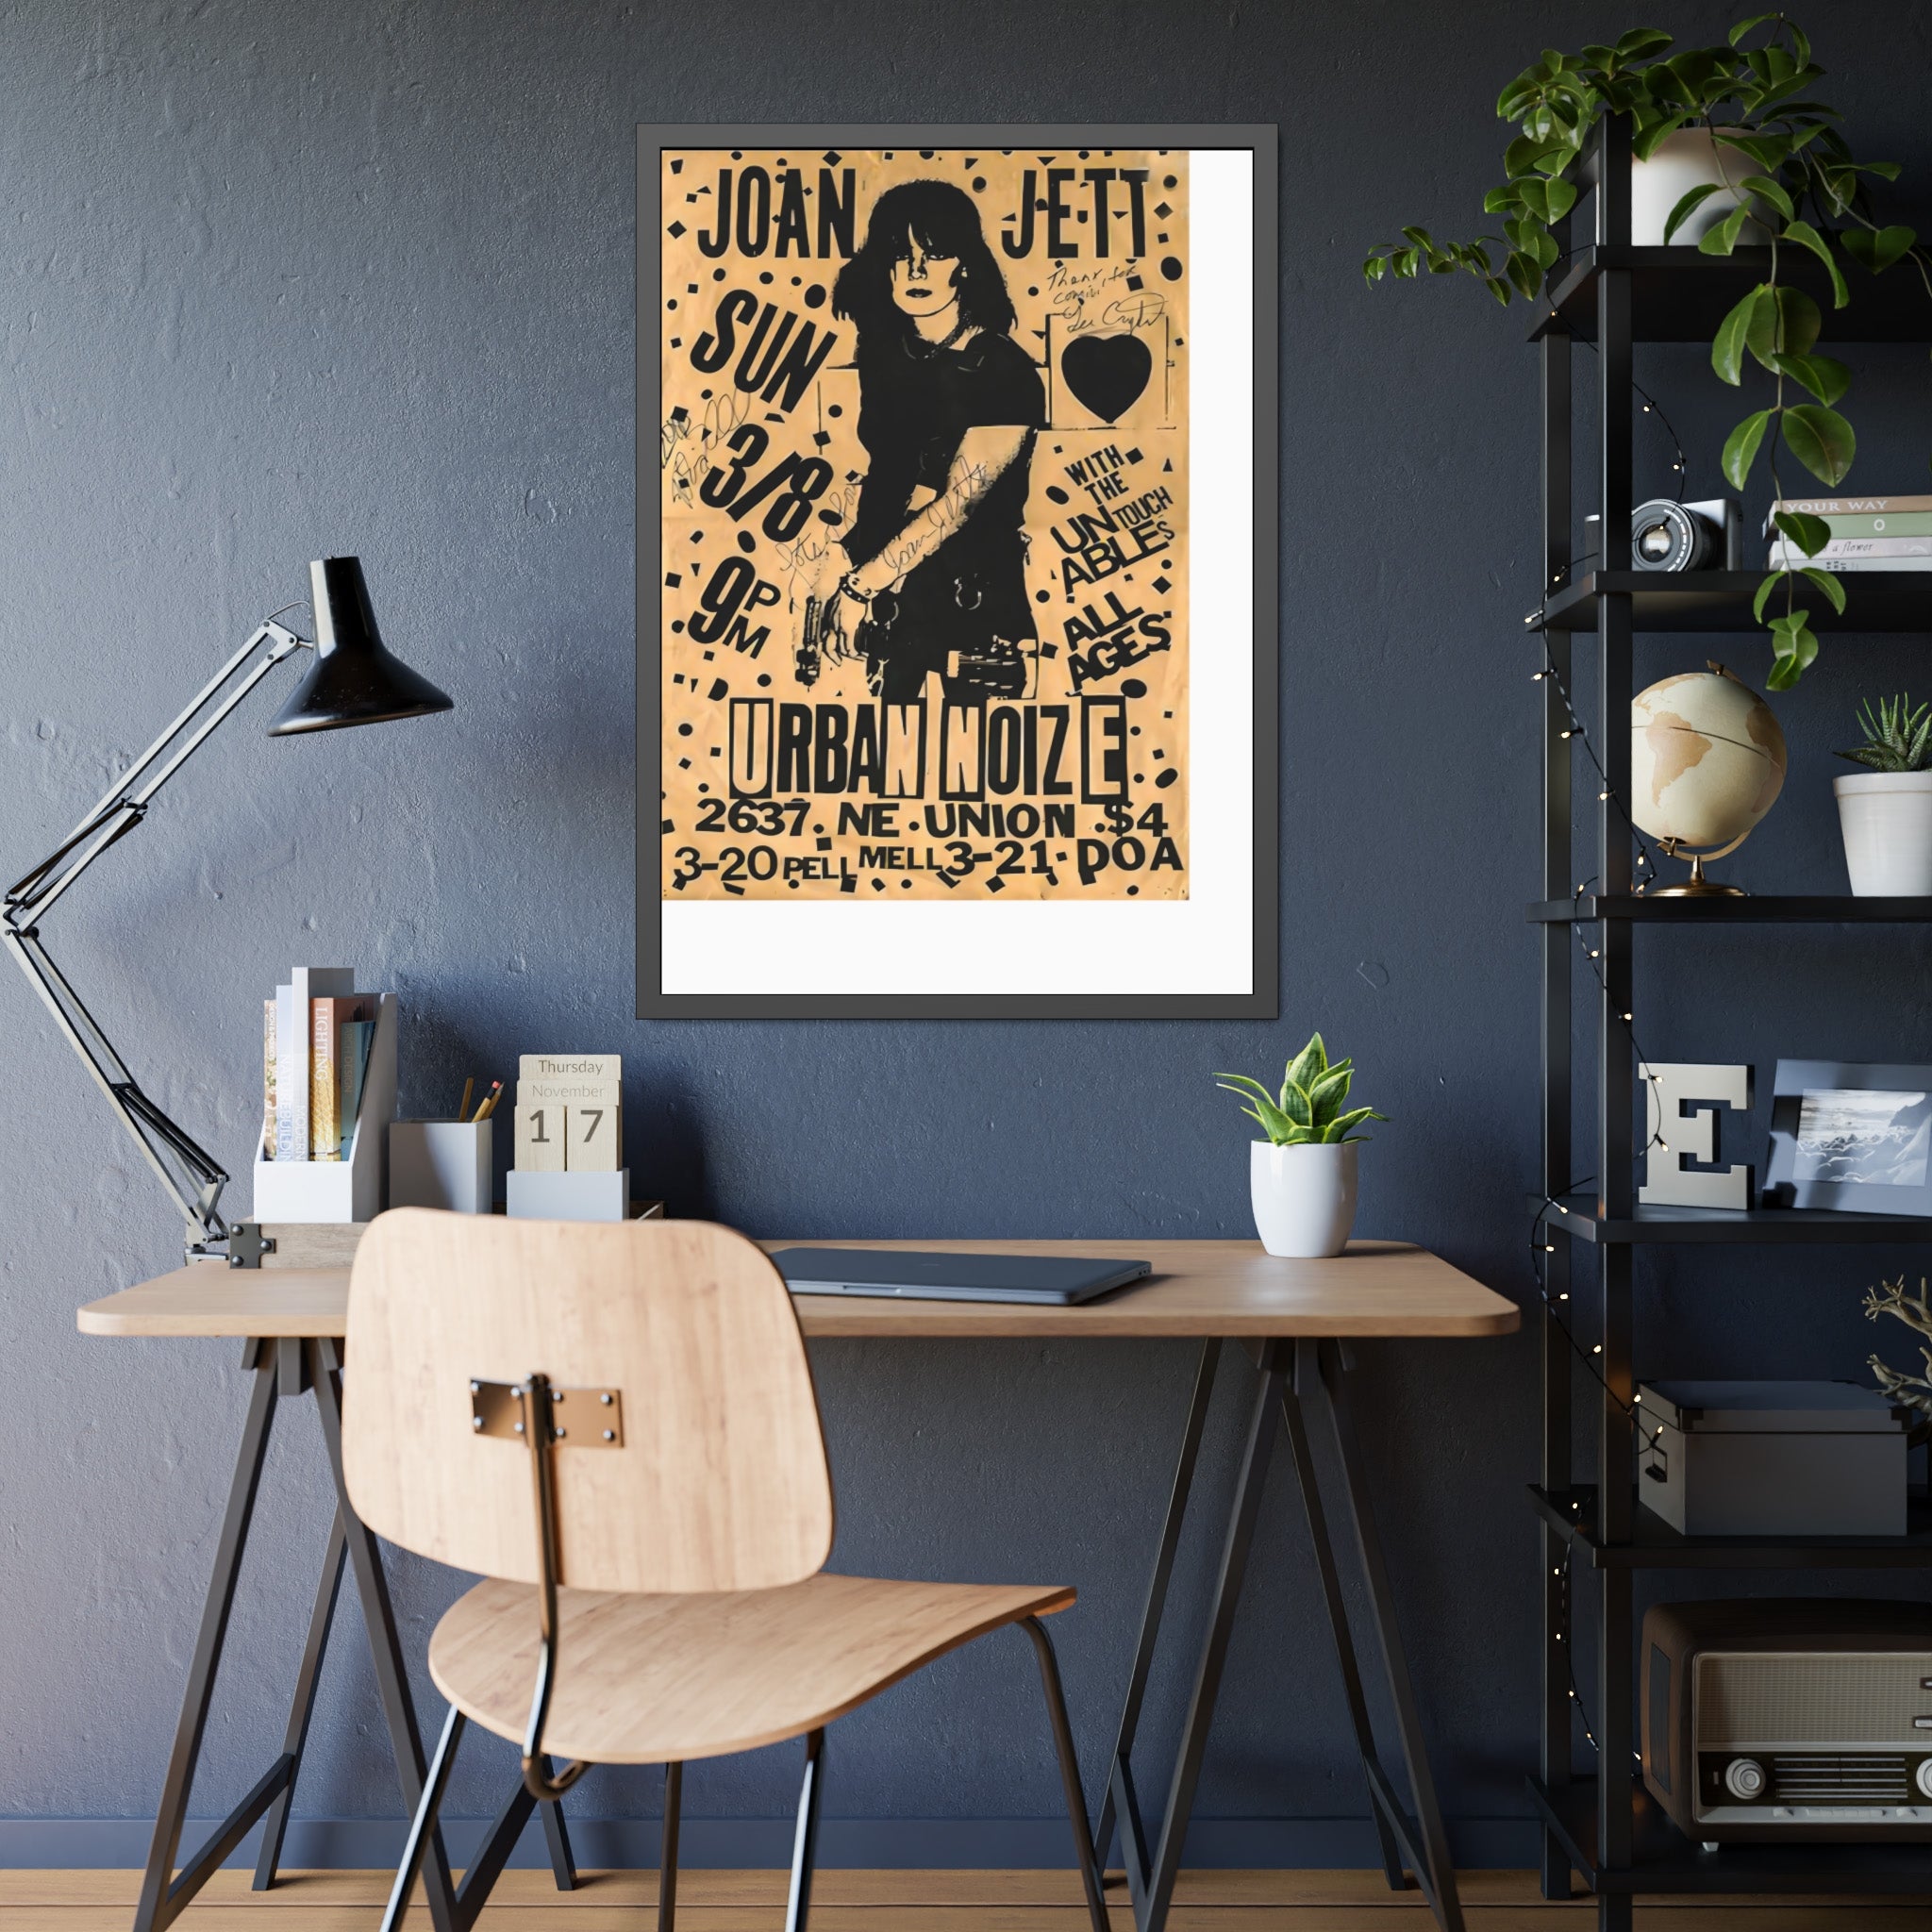 Joan Jett Concert Poster